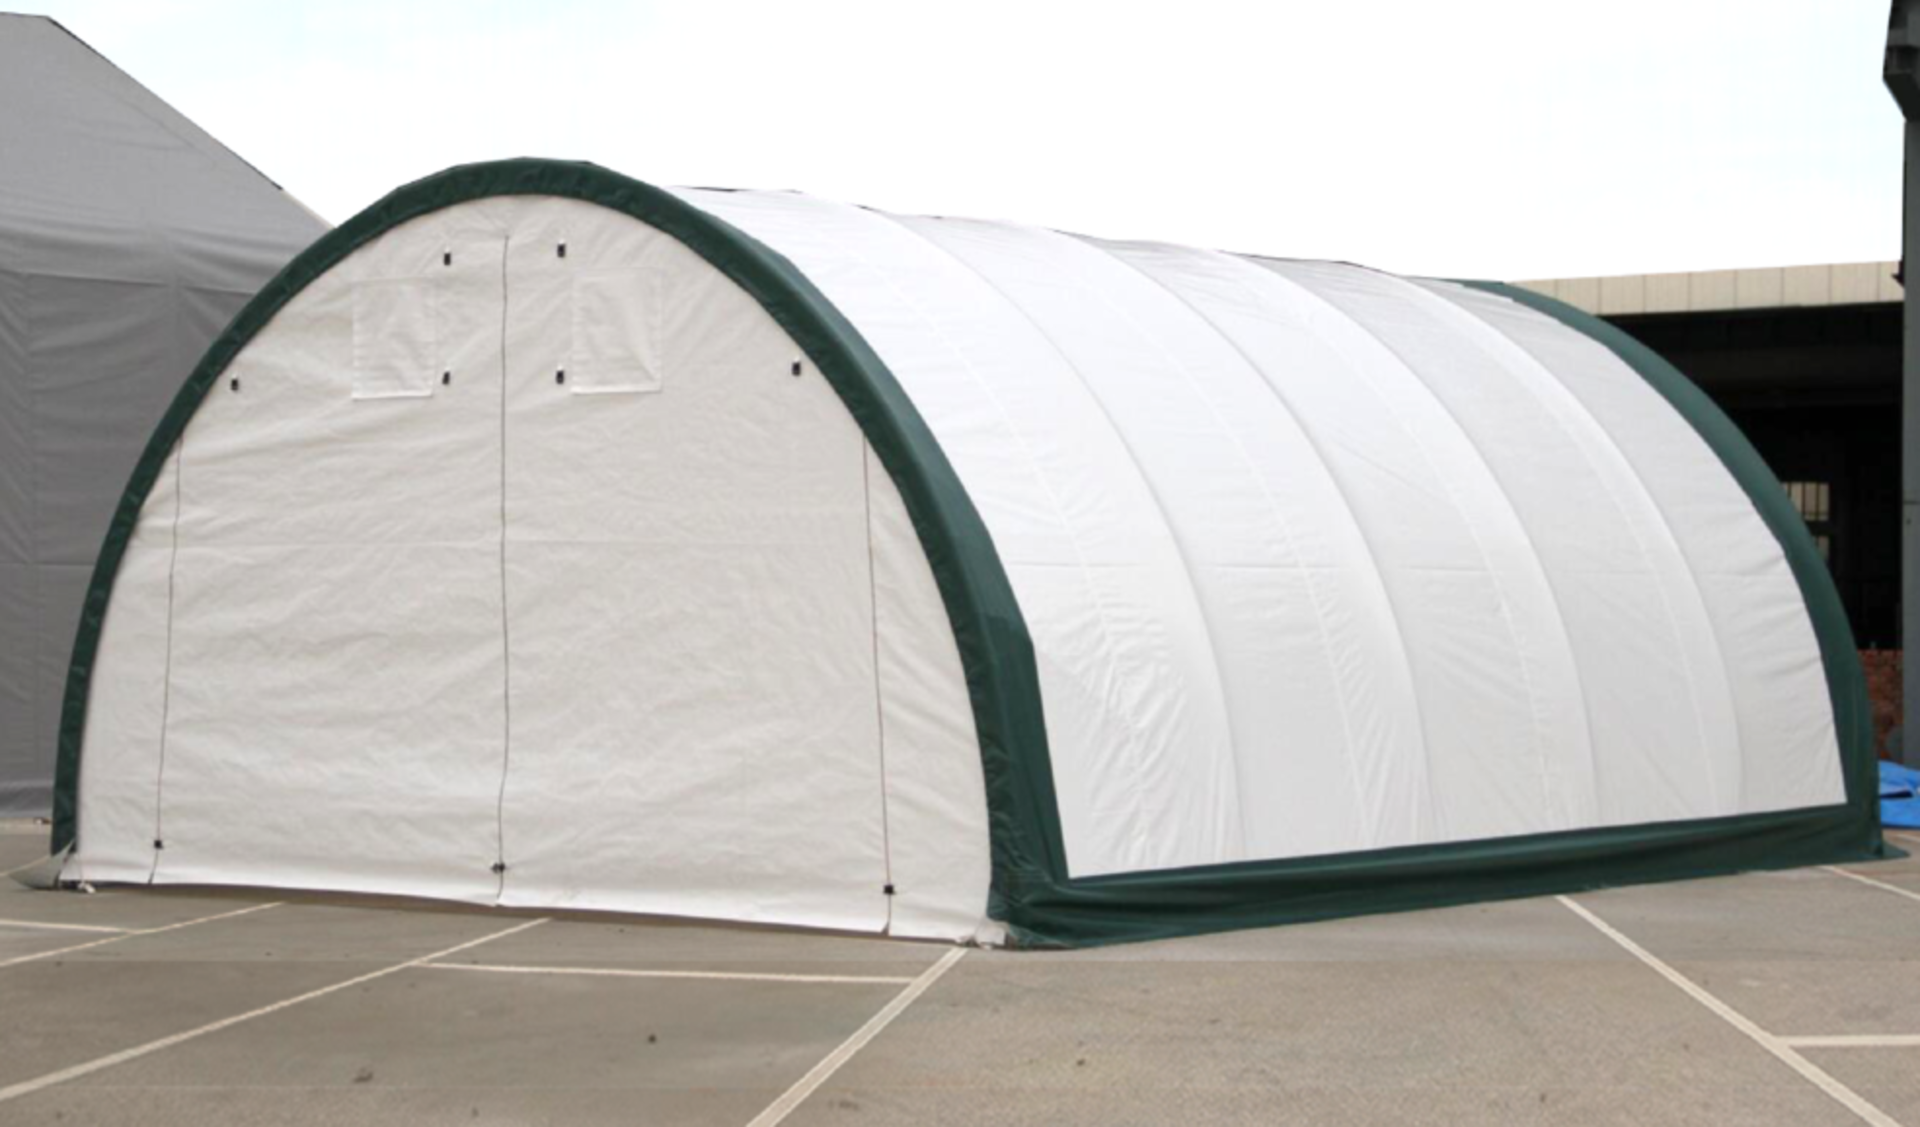 Heavy Duty Storage Shelter 20'W x 30'L x 12' H P/No 203012R